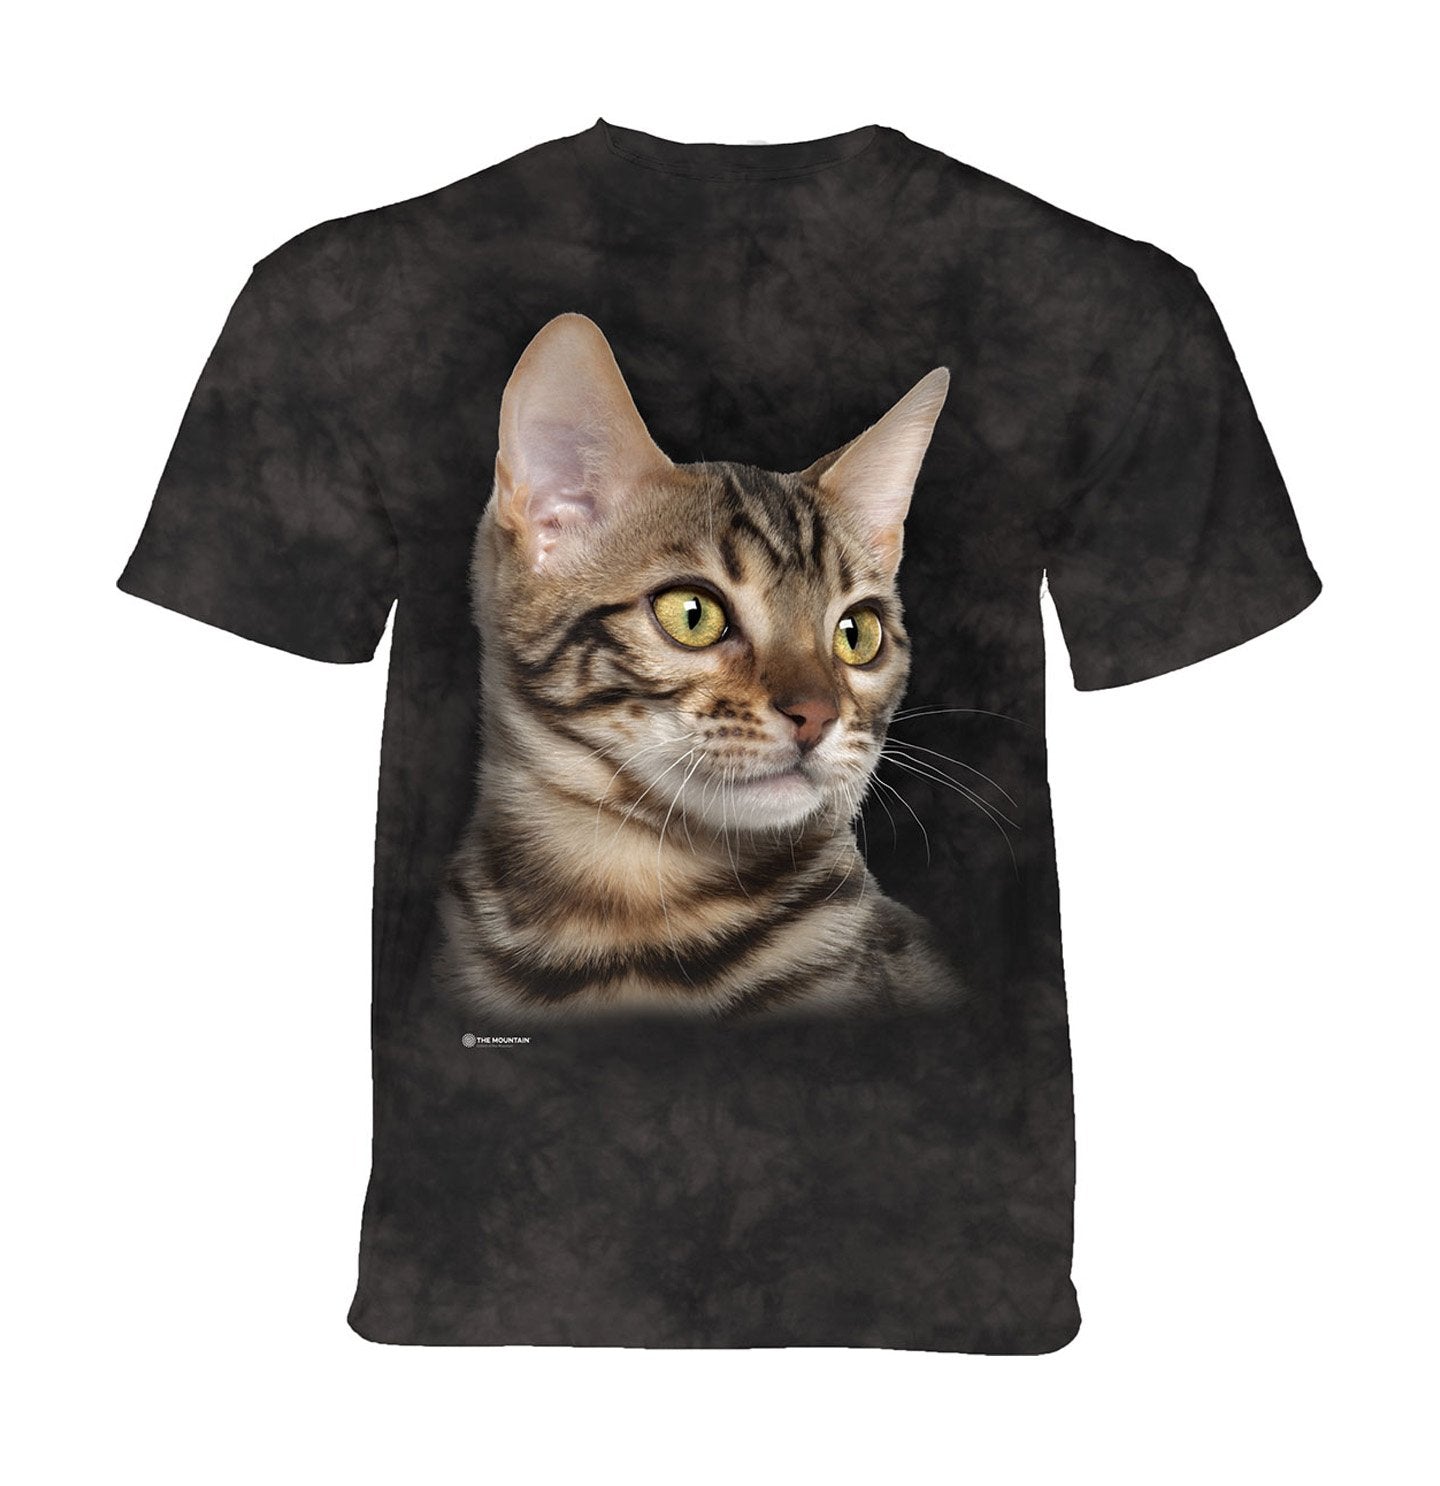 The Mountain - Striped Cat Portrait - Kids' Unisex T-Shirt